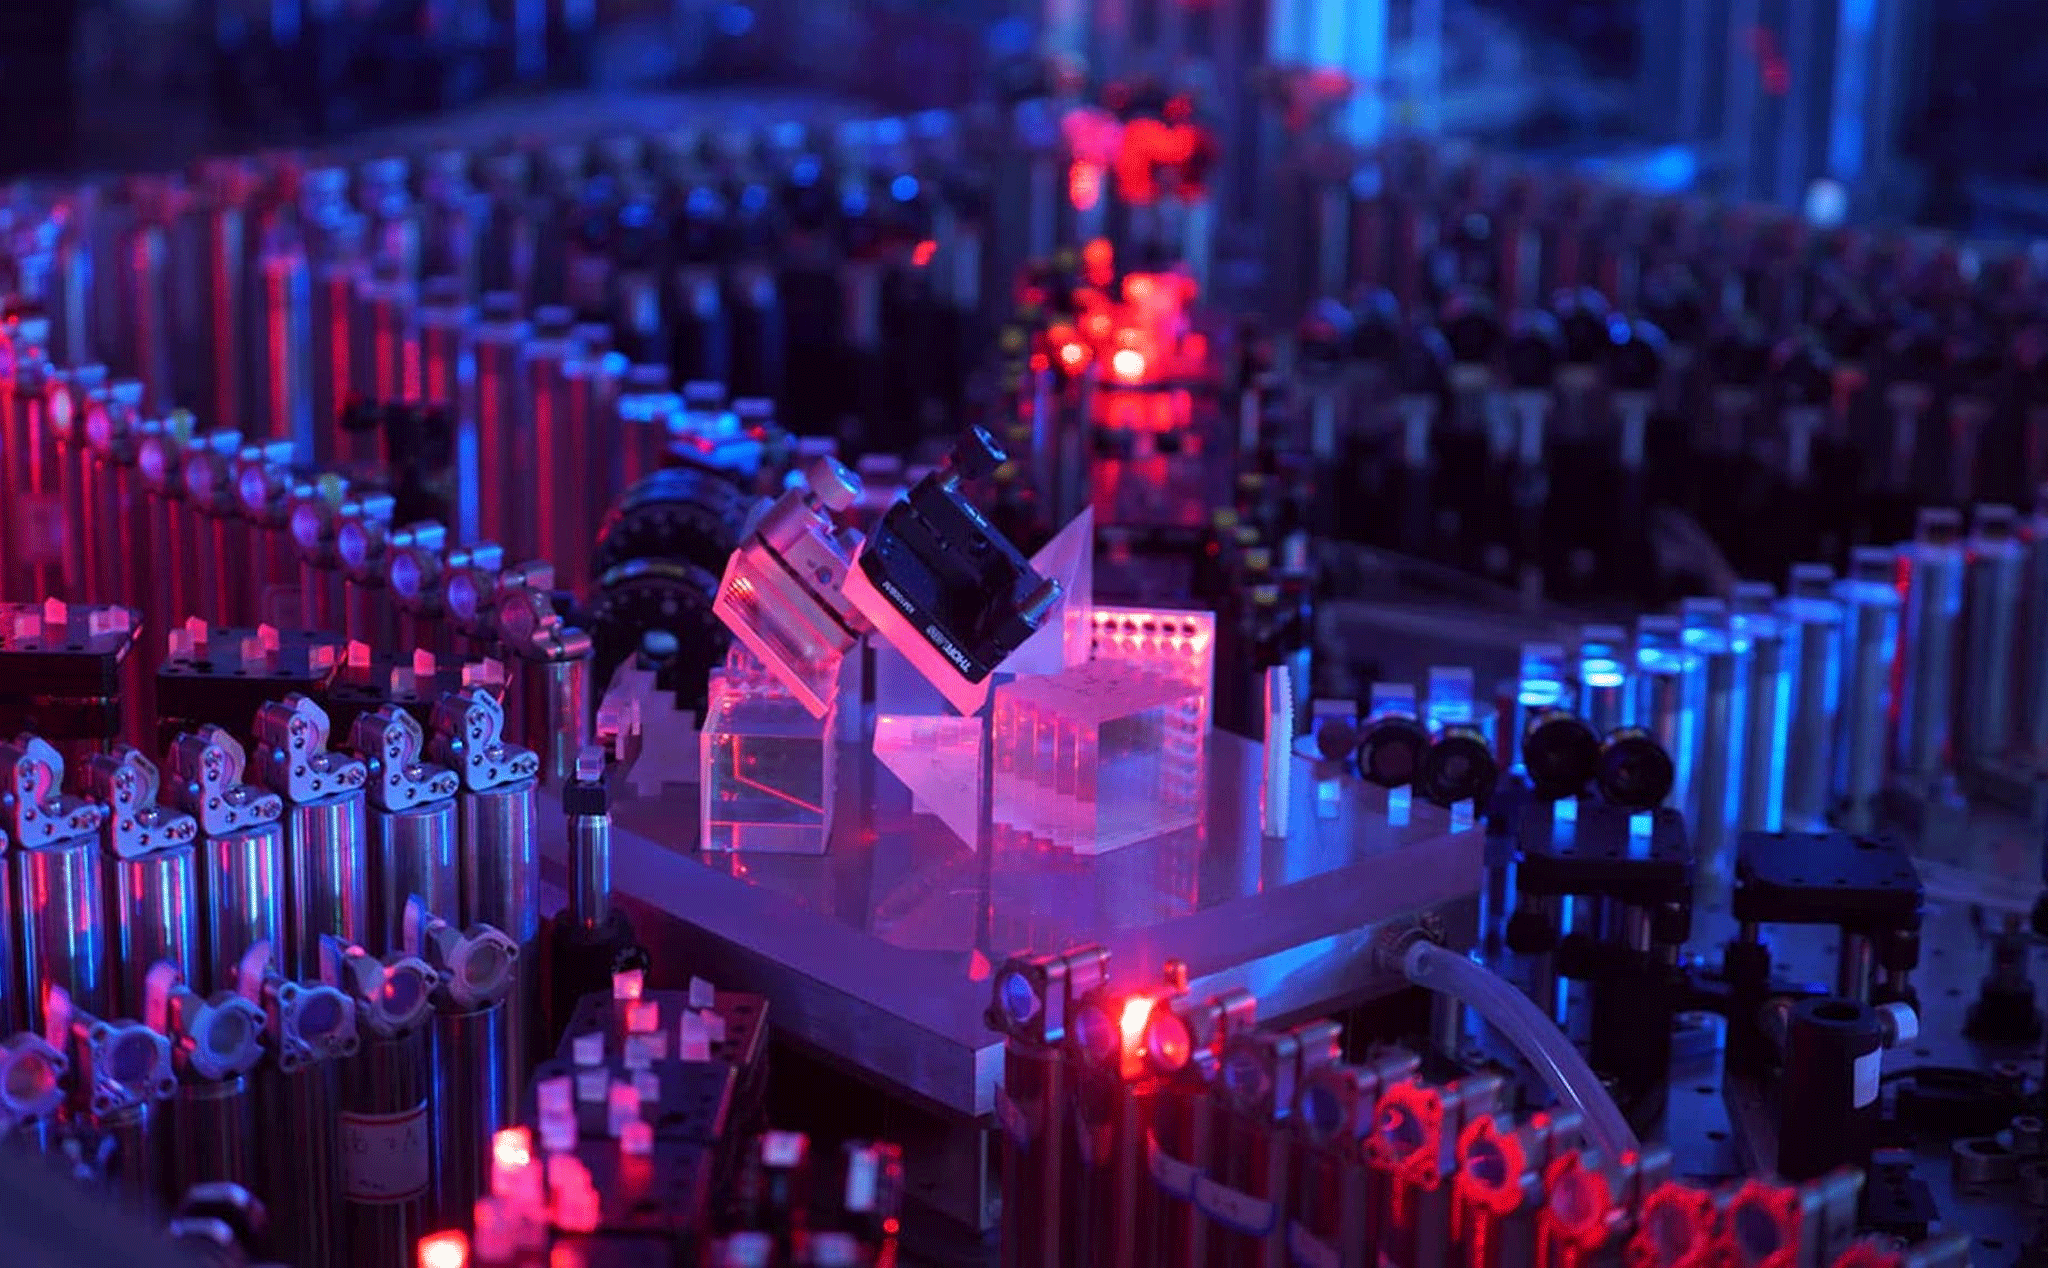 Vượt mặt Sycamore của Google, Trung Quốc đang sở hữu siêu máy tính lượng tử mạnh mẽ nhất thế giới